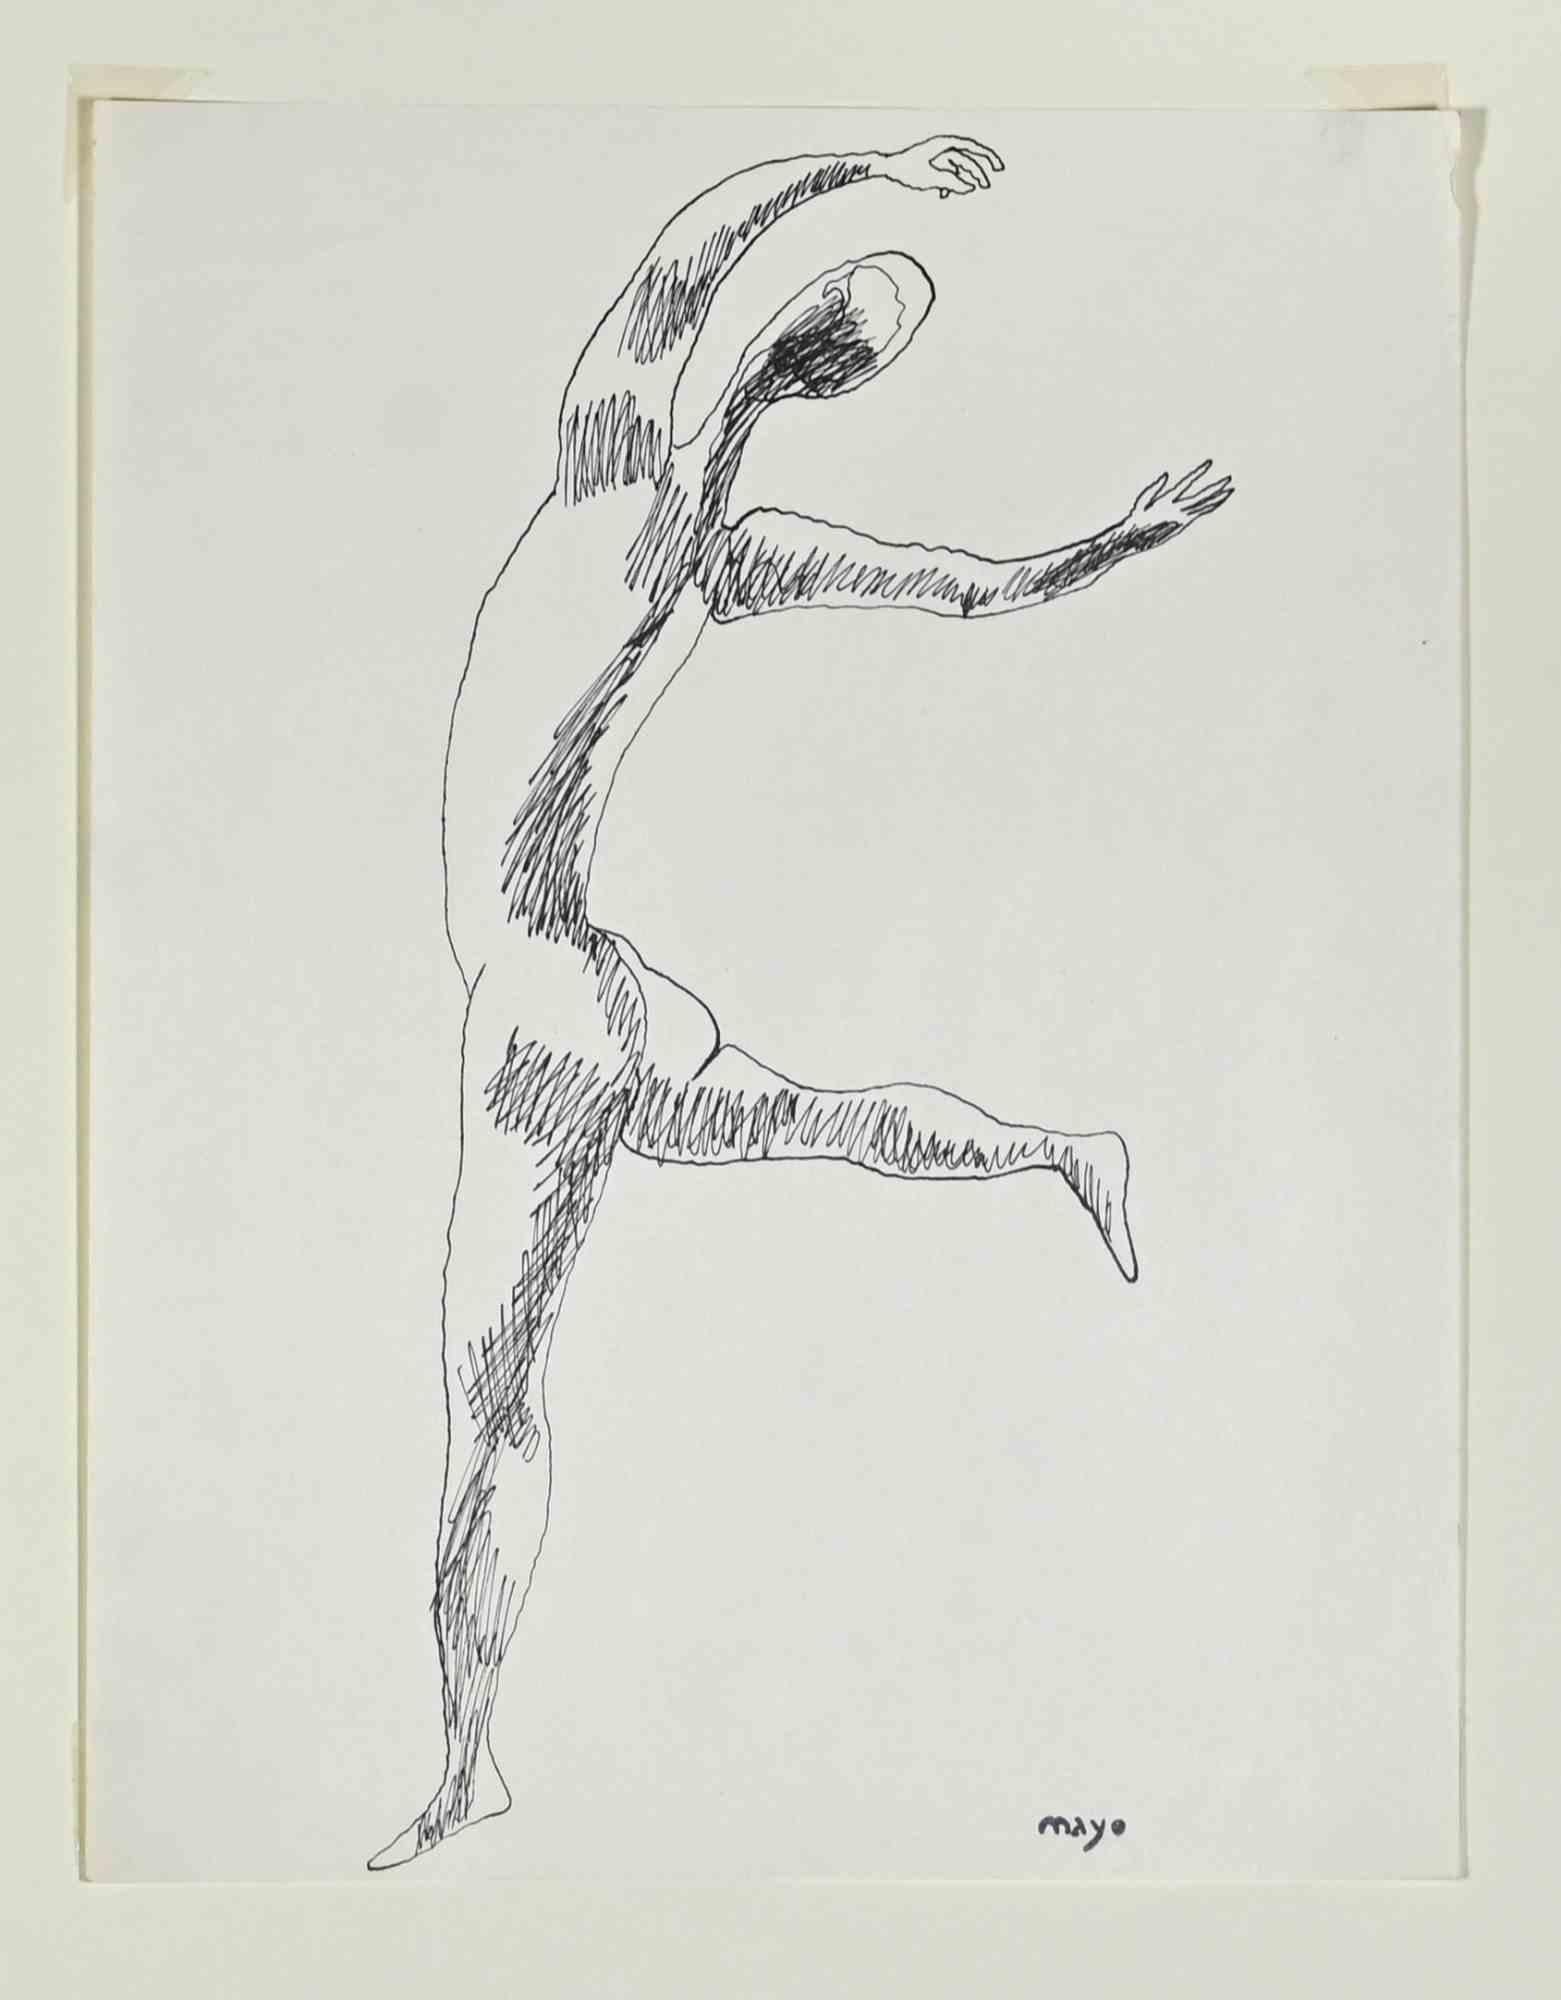 Dancing Figur – Stift von Mayo, 1950er-Jahre